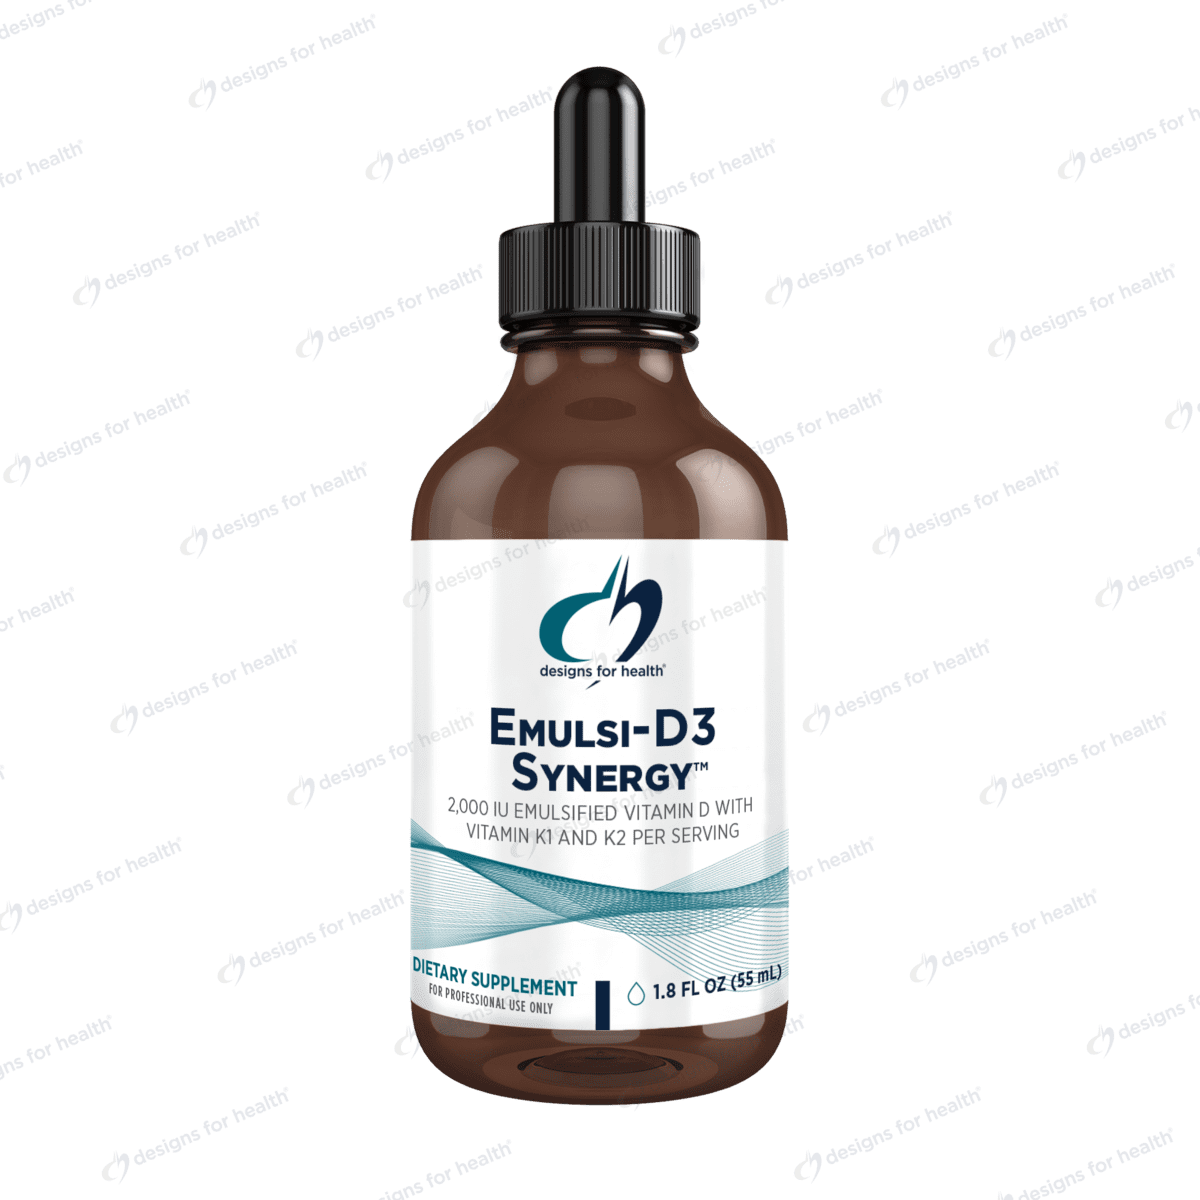 Emulsi-D3 Synergy™